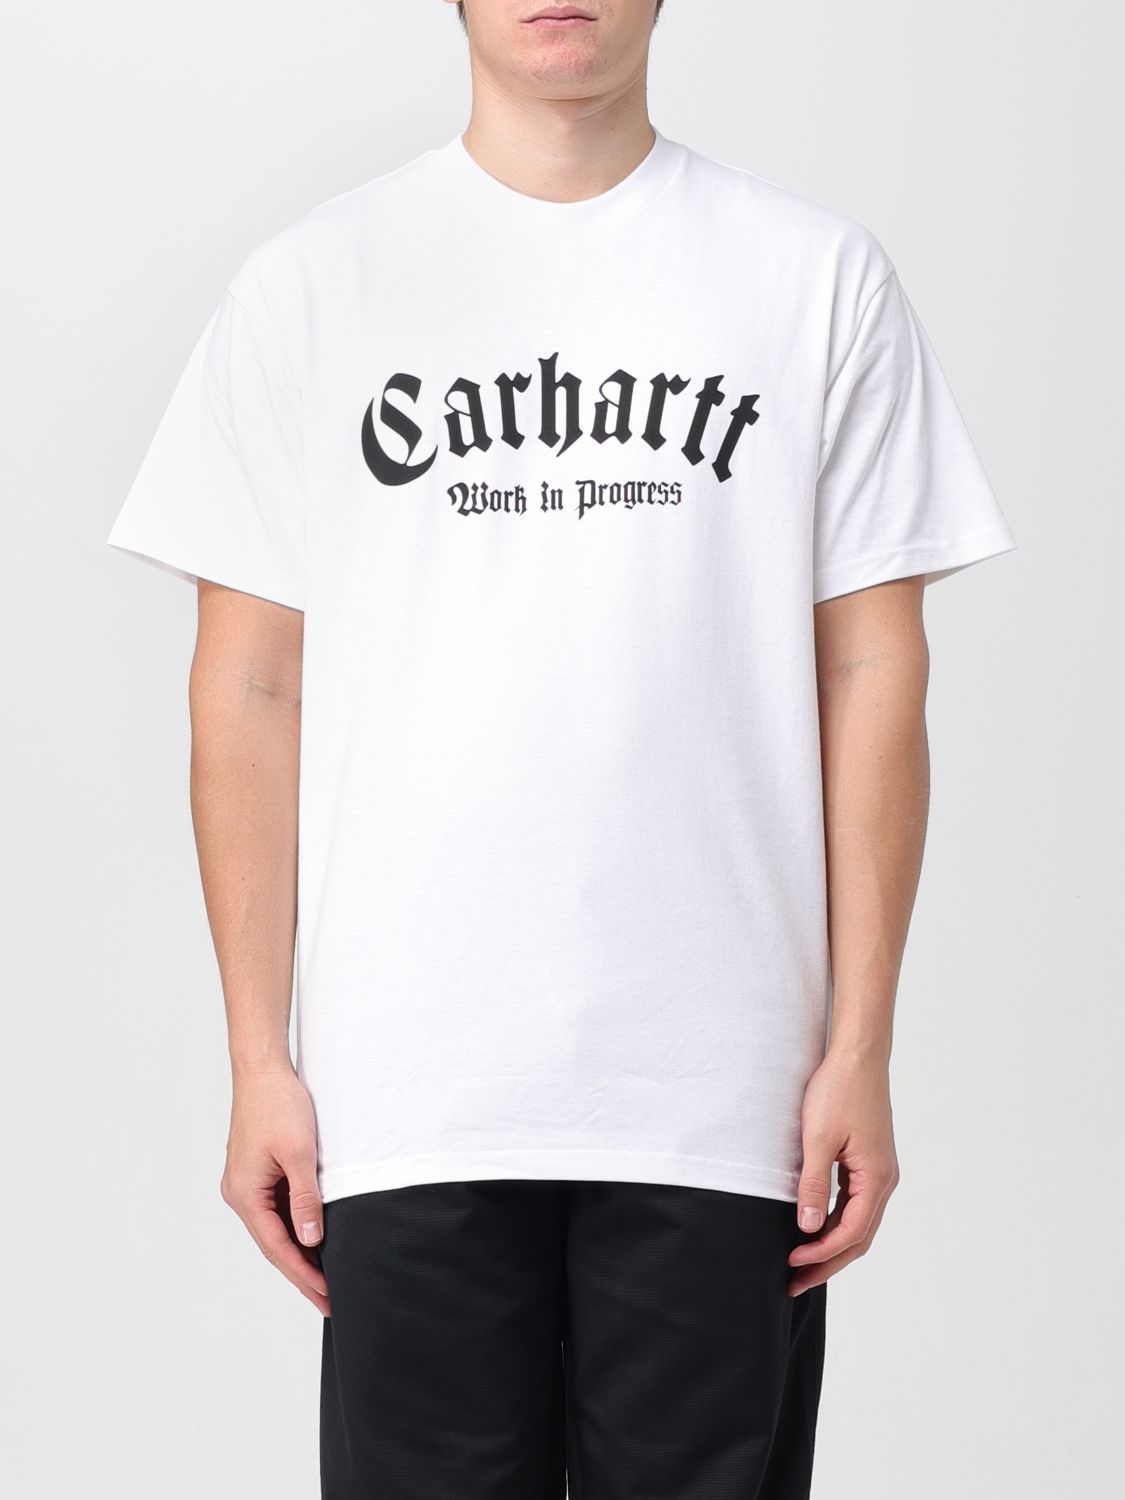 Carhartt T-shirt  Wip Herren Farbe Weiss In White